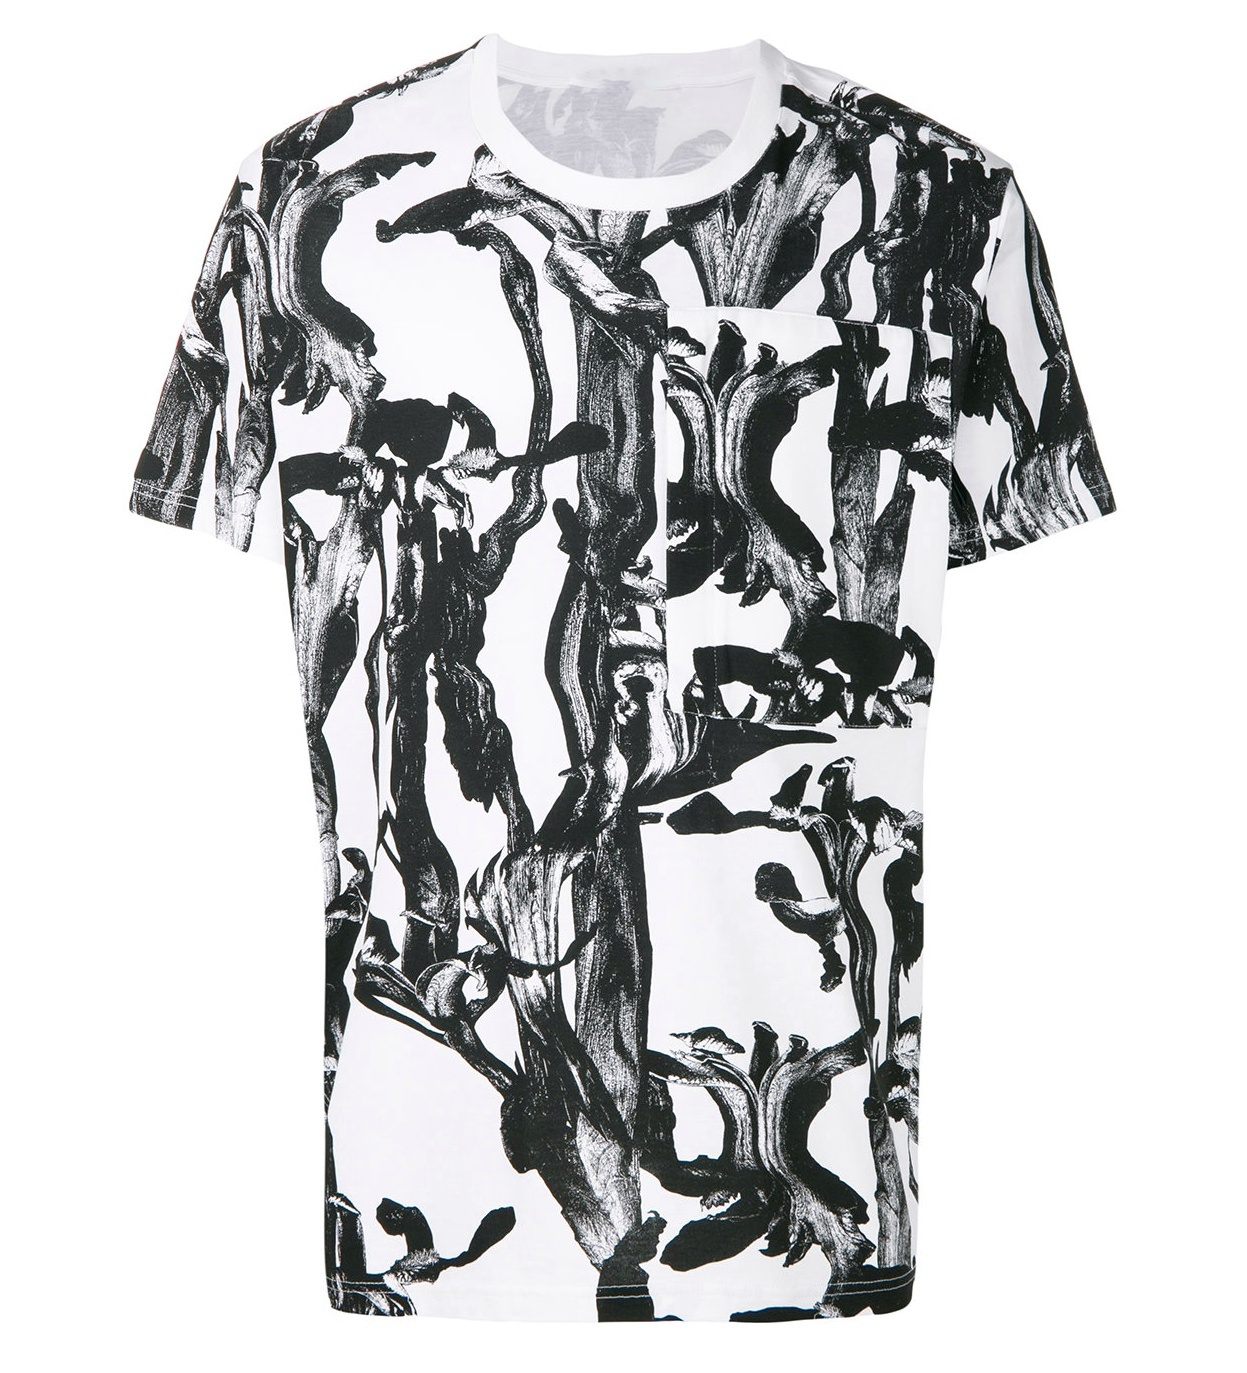 Indie Designs Flower Print T-shirt – Indie Designs Clothing